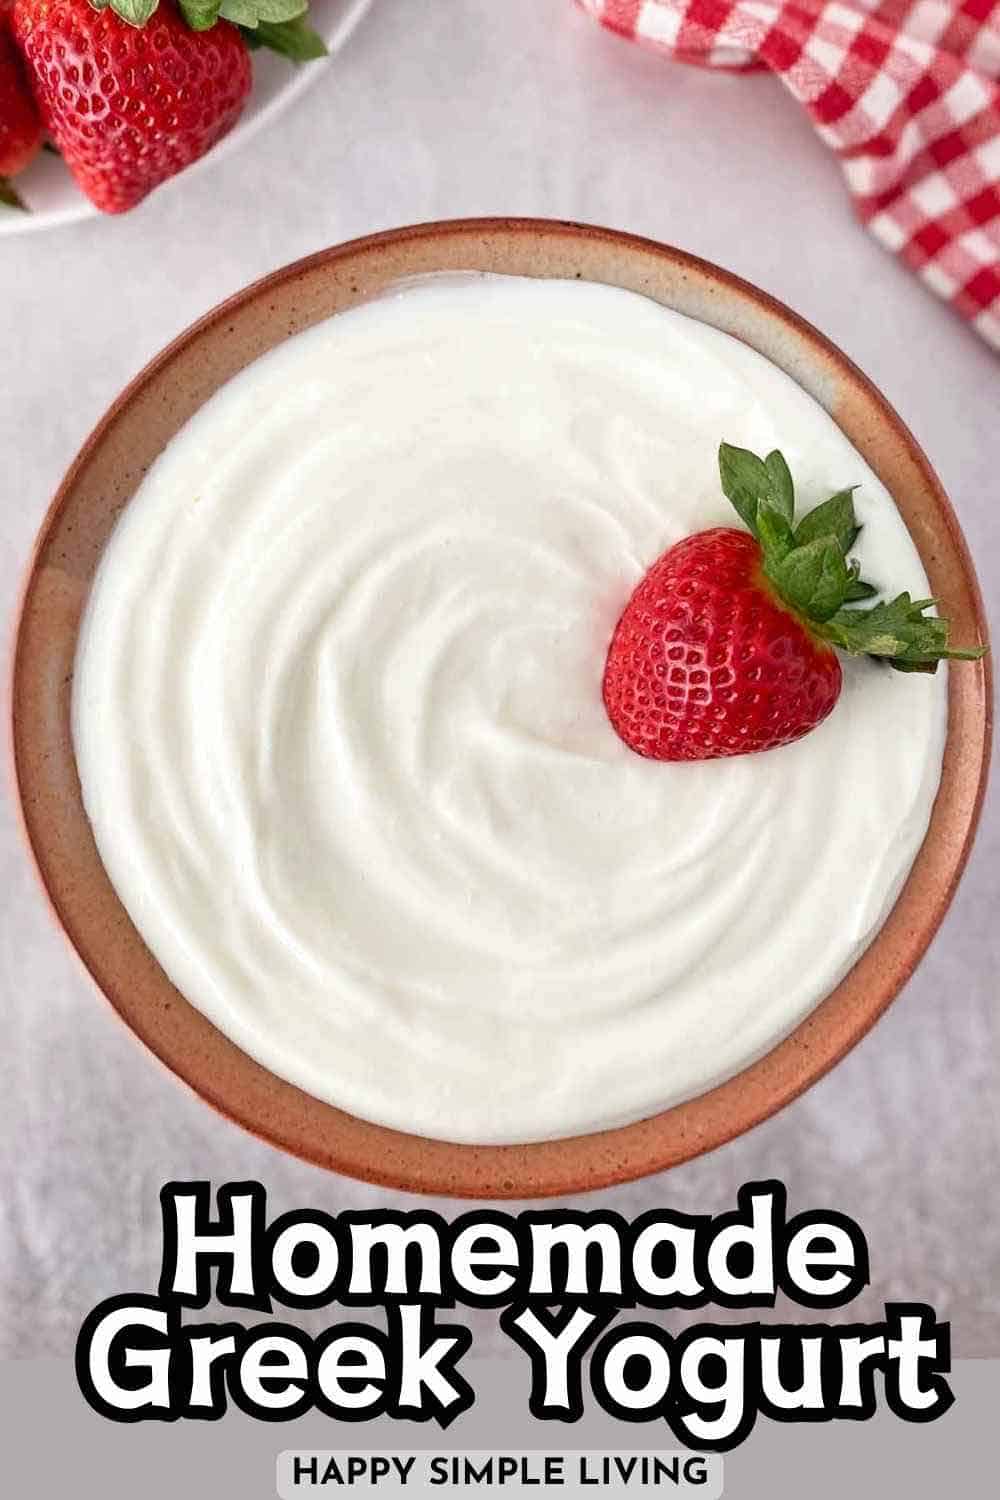 A bowl of Greek yogurt with a fresh strawberry on top.